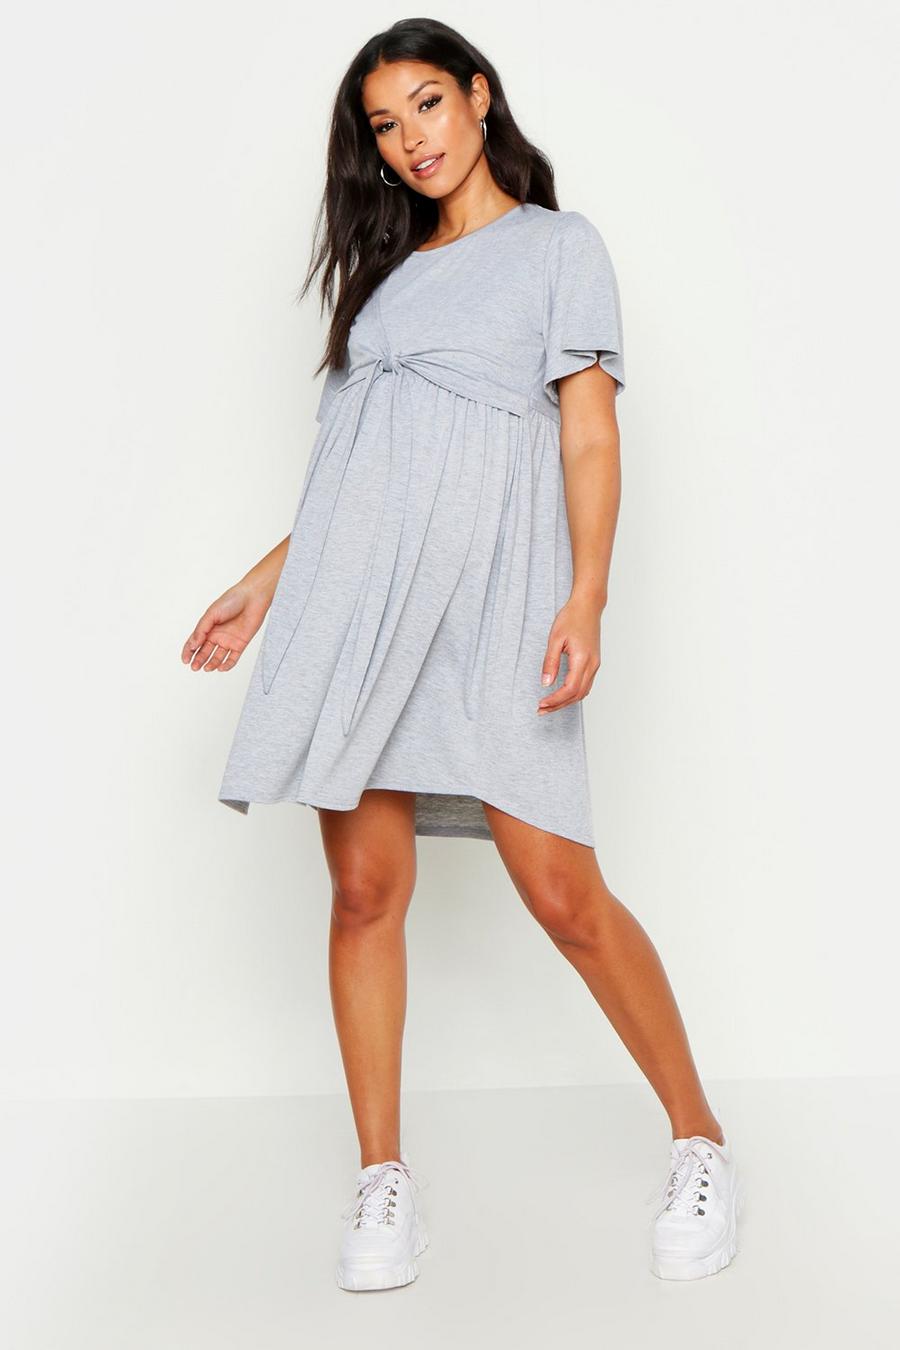 Positiekleding Gesmokte jurk met overslag voor borstvoeding image number 1